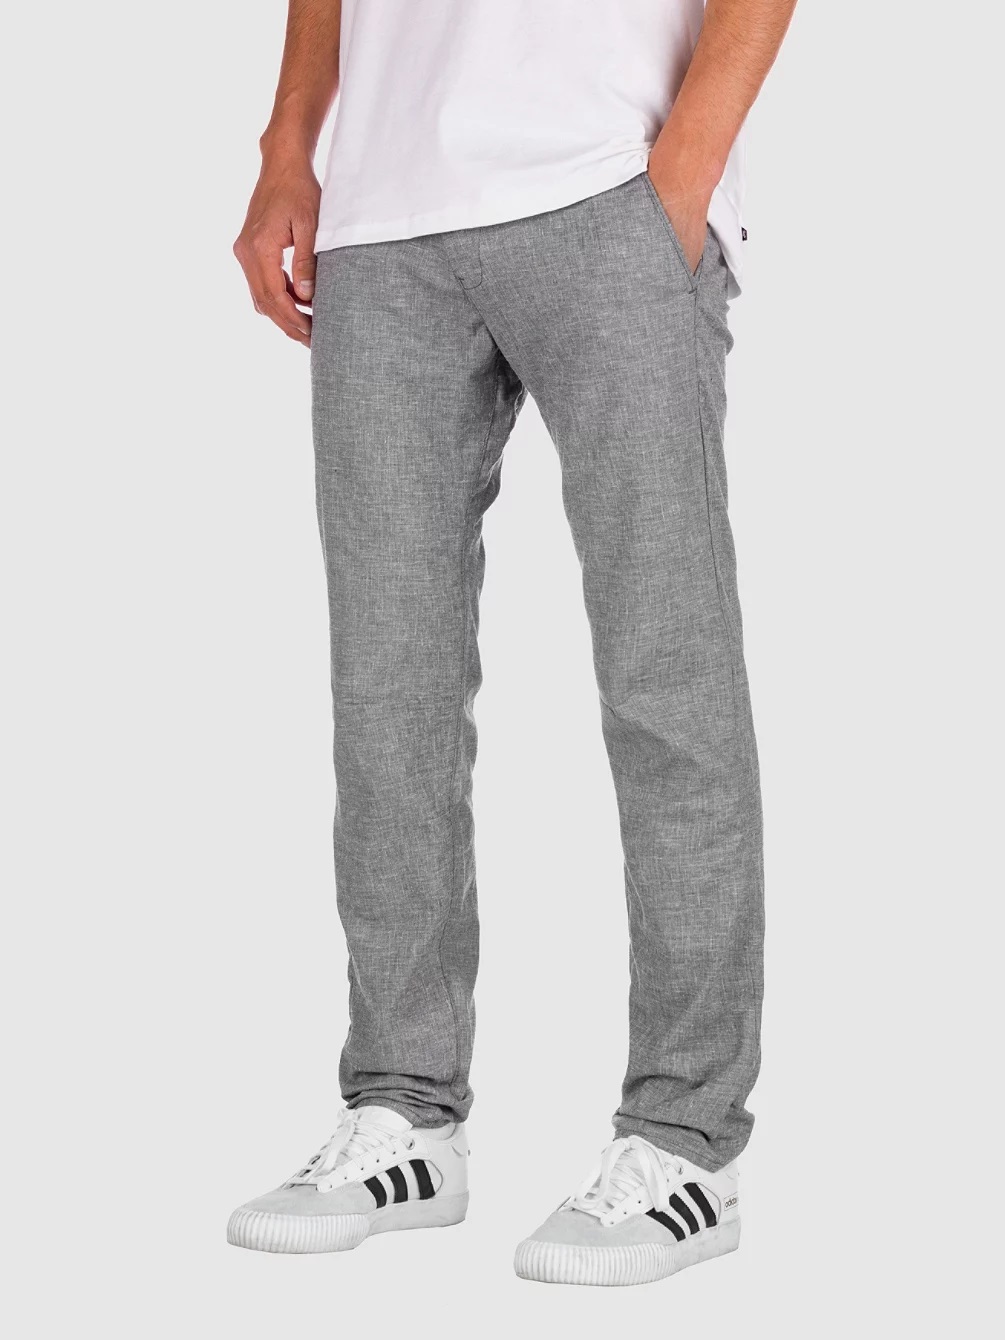 Pantaloni REEL Reflex Evo Grey Linen Gray L